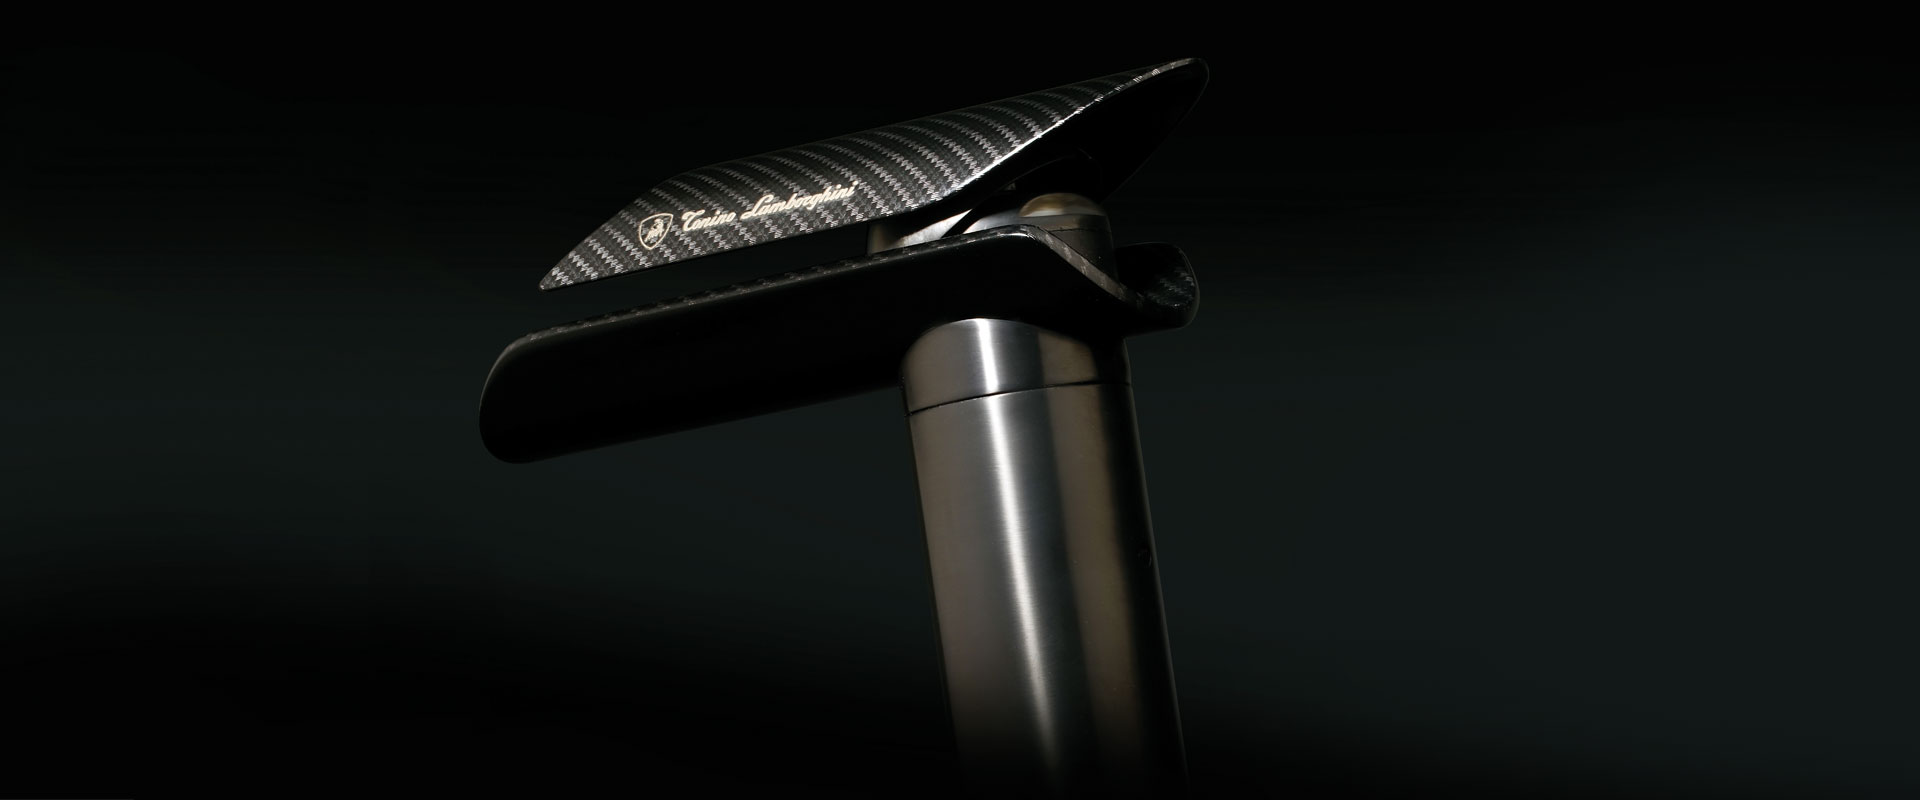 La nuova linea di rubinetti Tonino Lamborghini Water Design